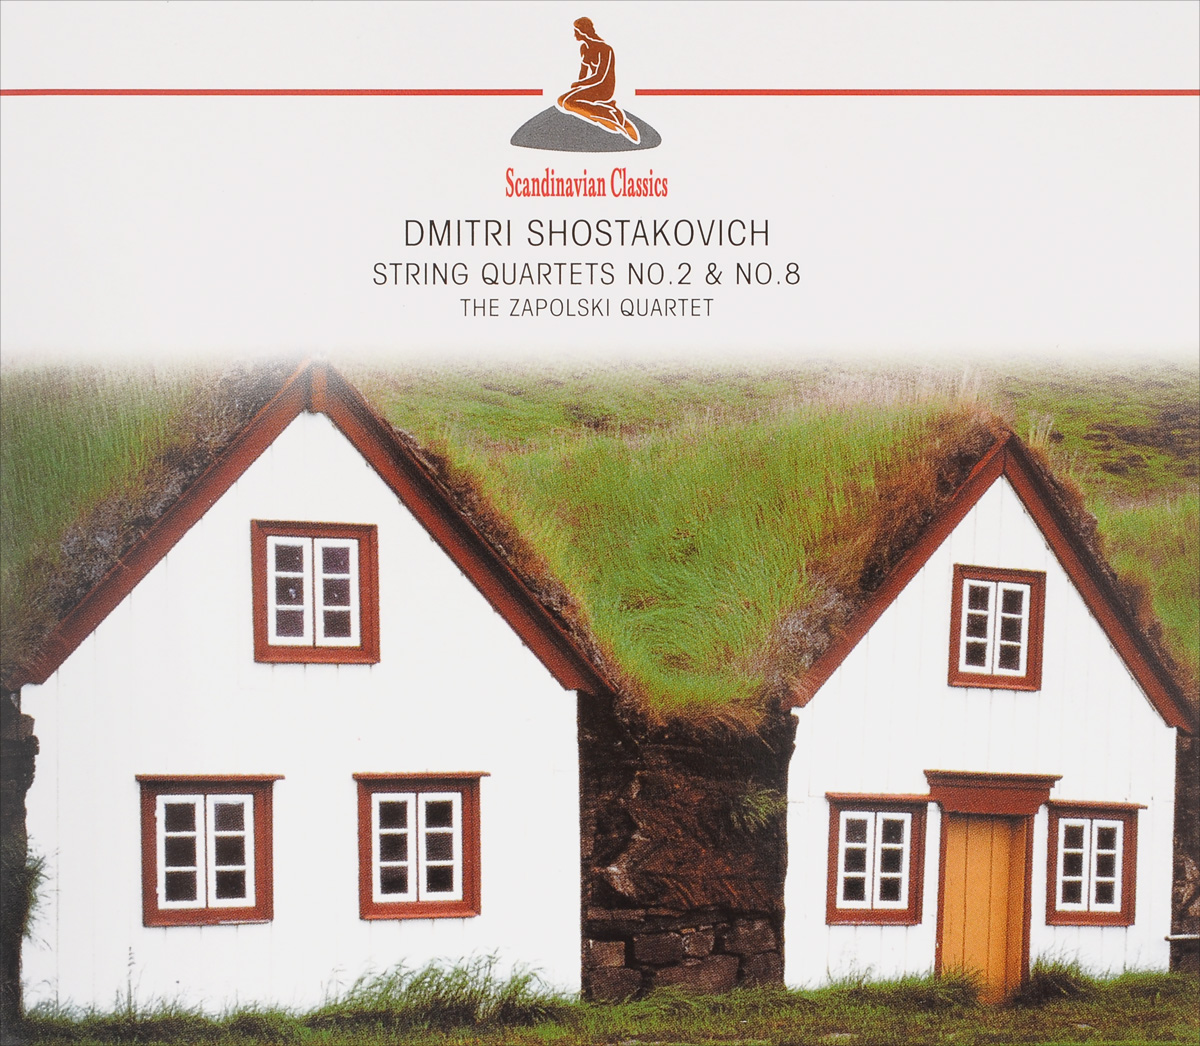 Scandinavian Classics. Zapolski Quartet. Dmitri Schostakowitch. String Quartets No. 2 & No. 8